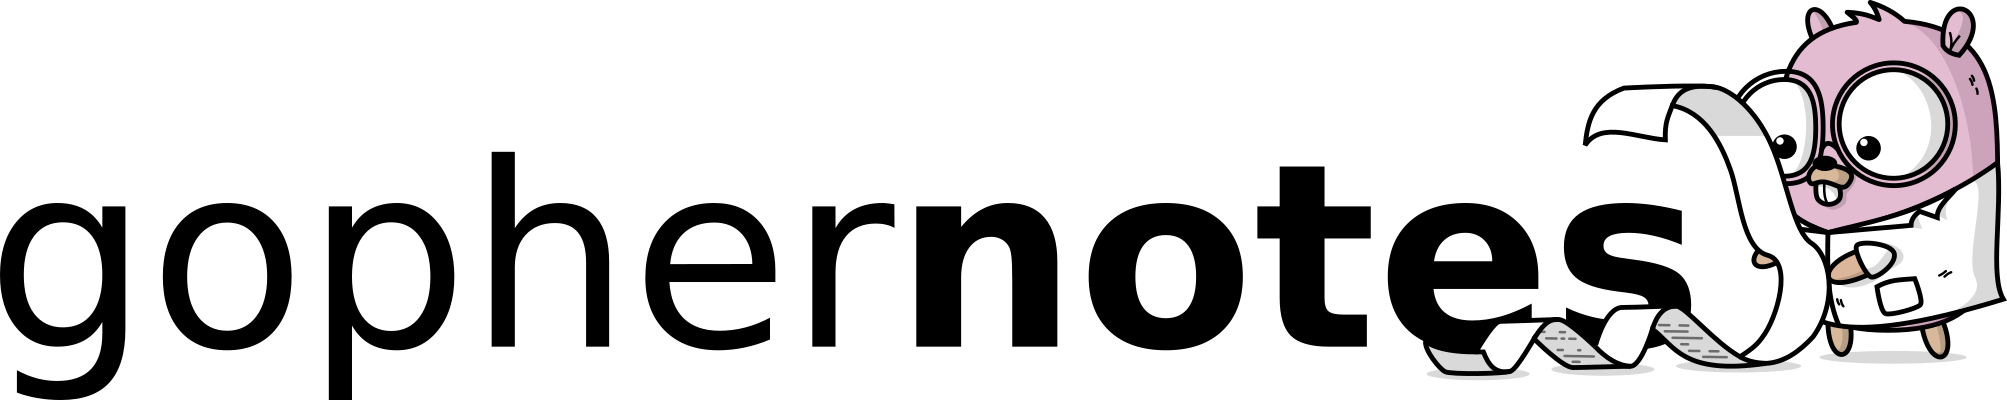 gophernotes-logo.png